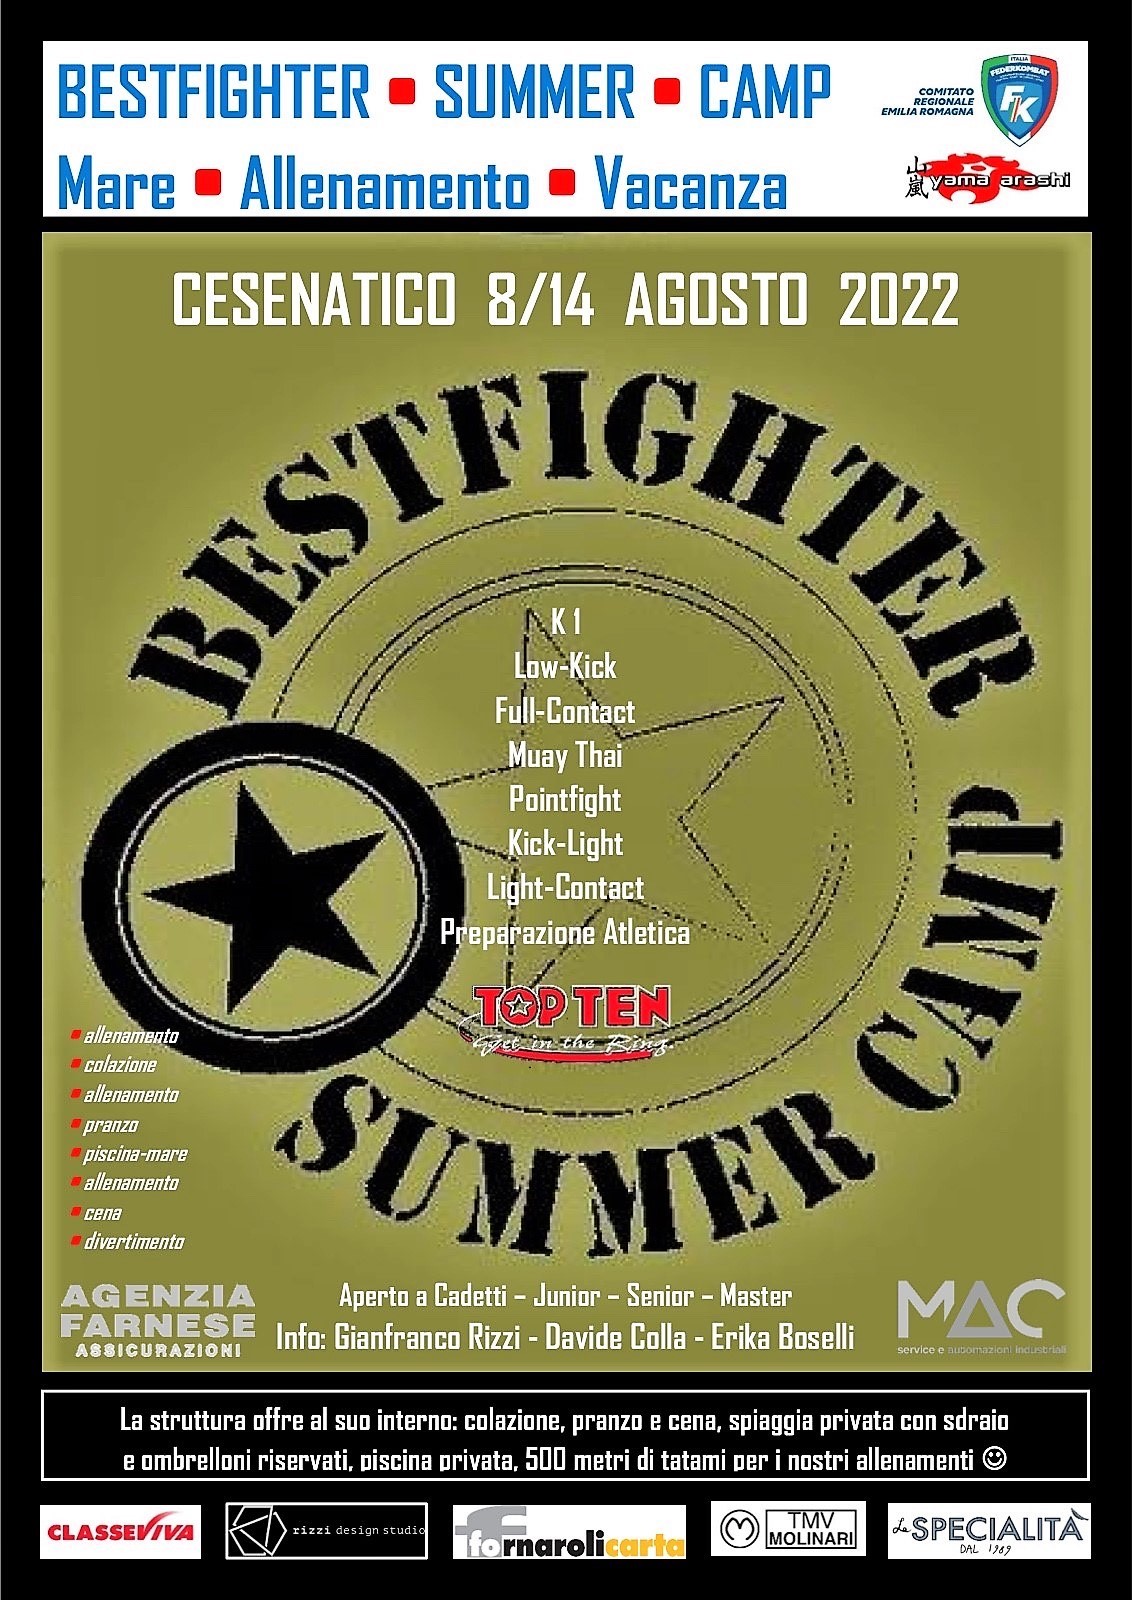 Bestfighter Summer Camp